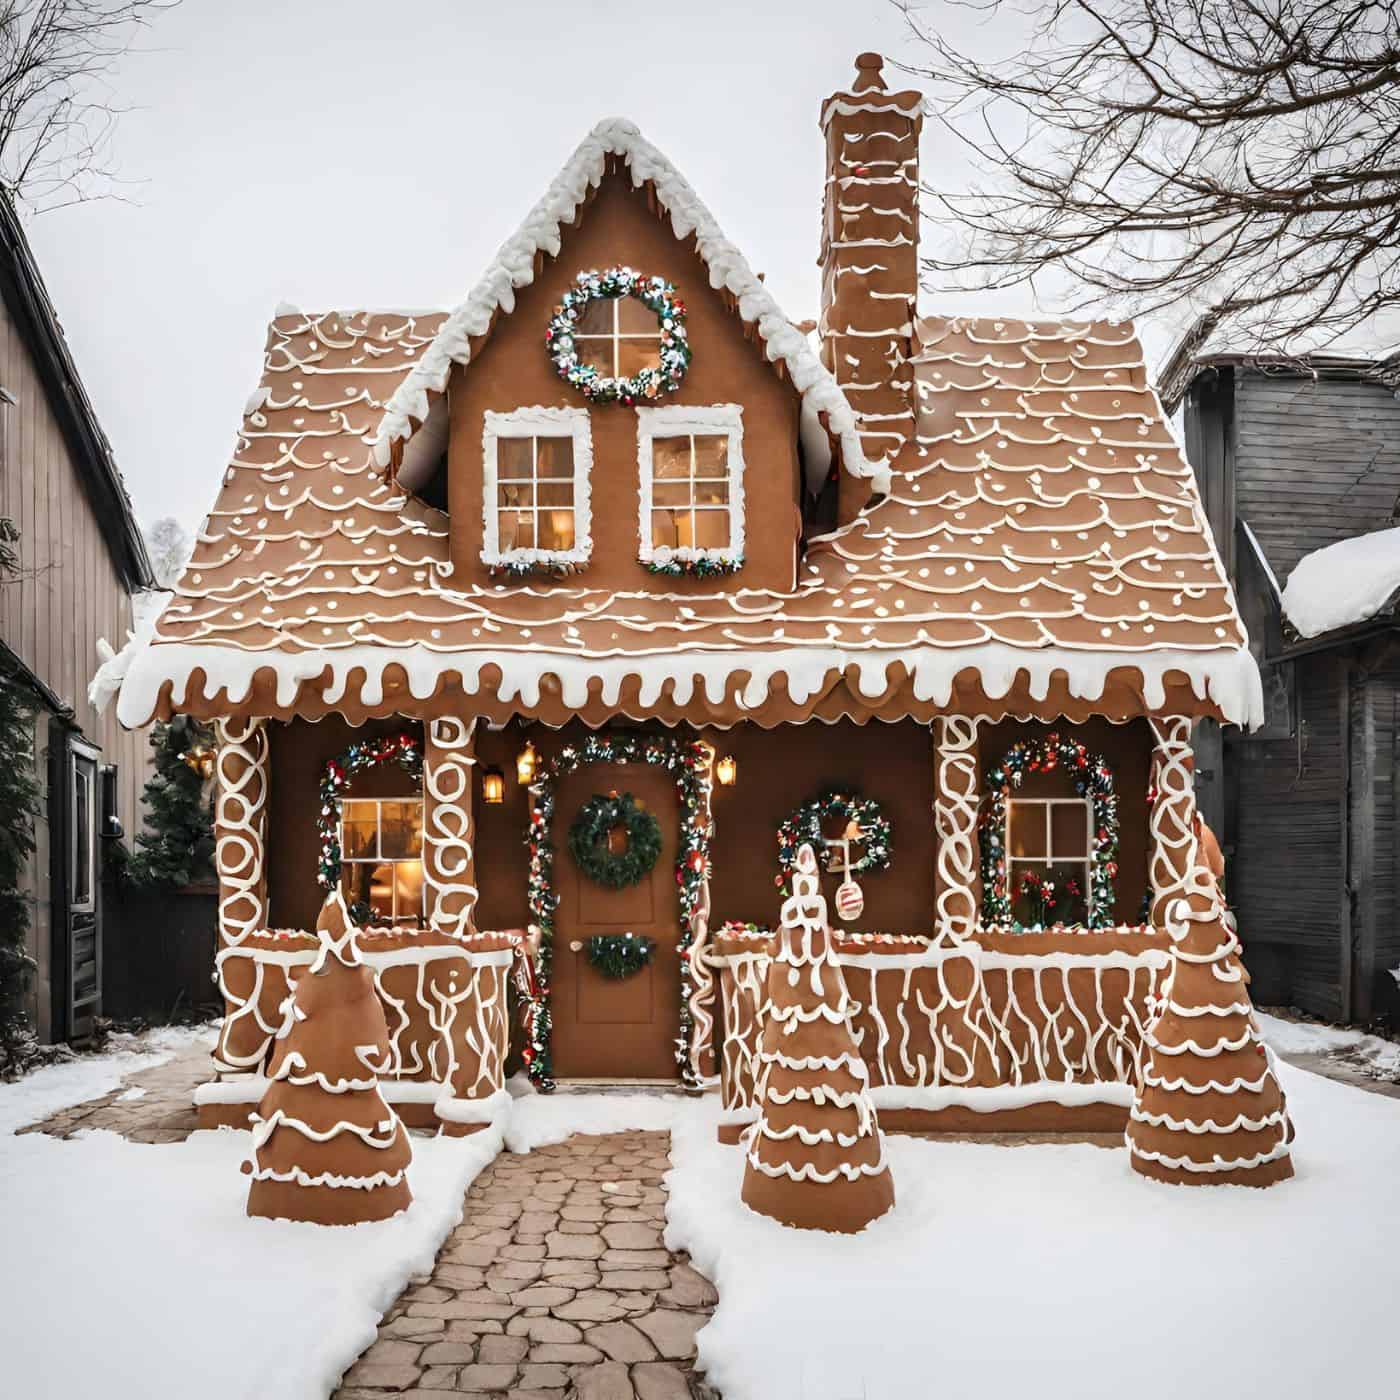 Gingerbread house exterior decor